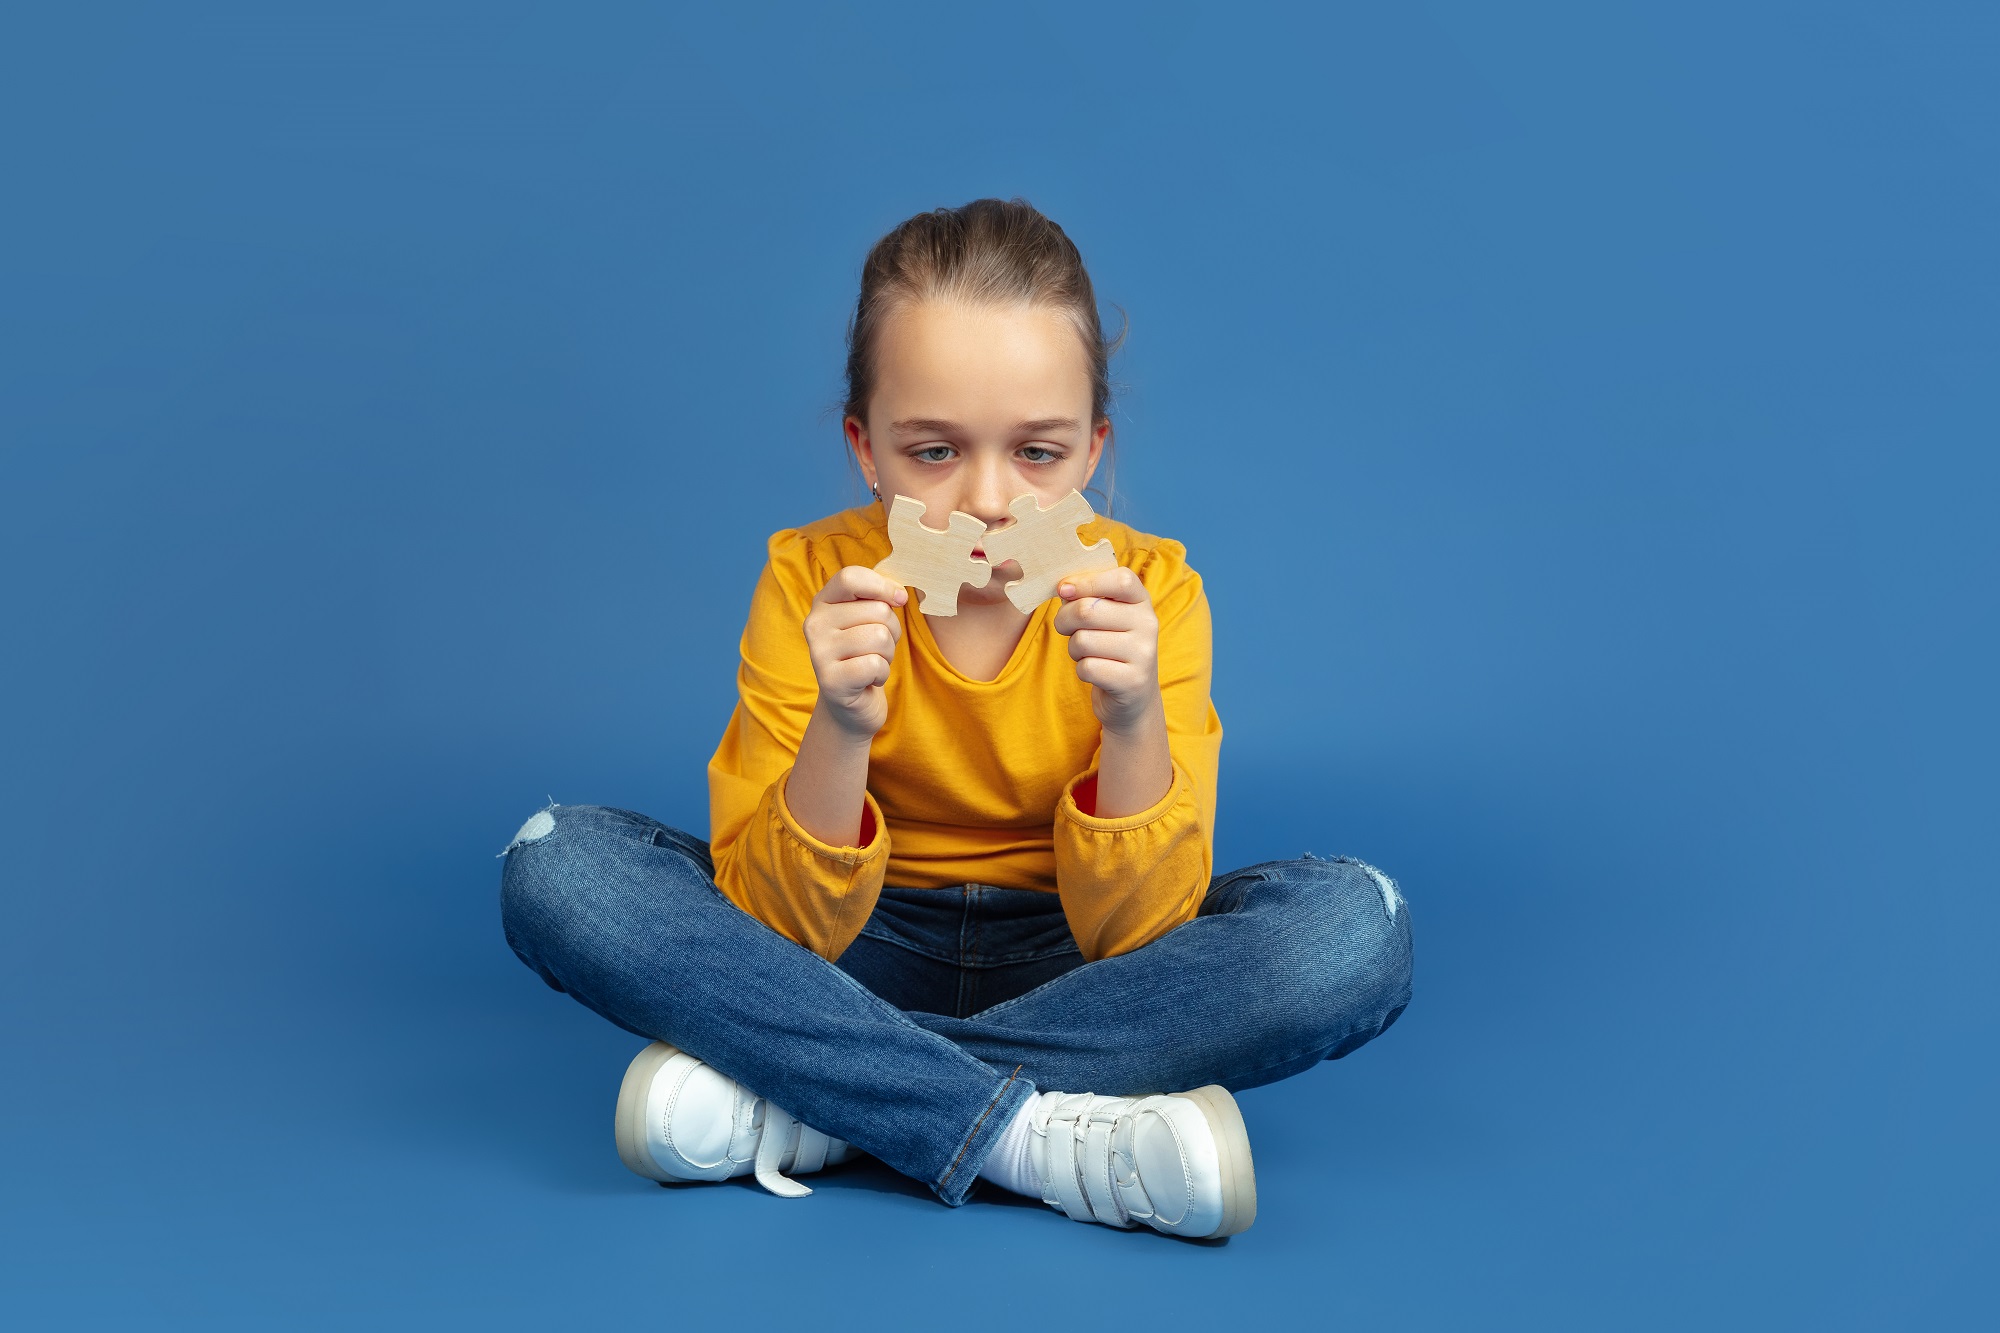 Sinais de Autismo Retrato de uma menina triste sentada isolada no fundo azul